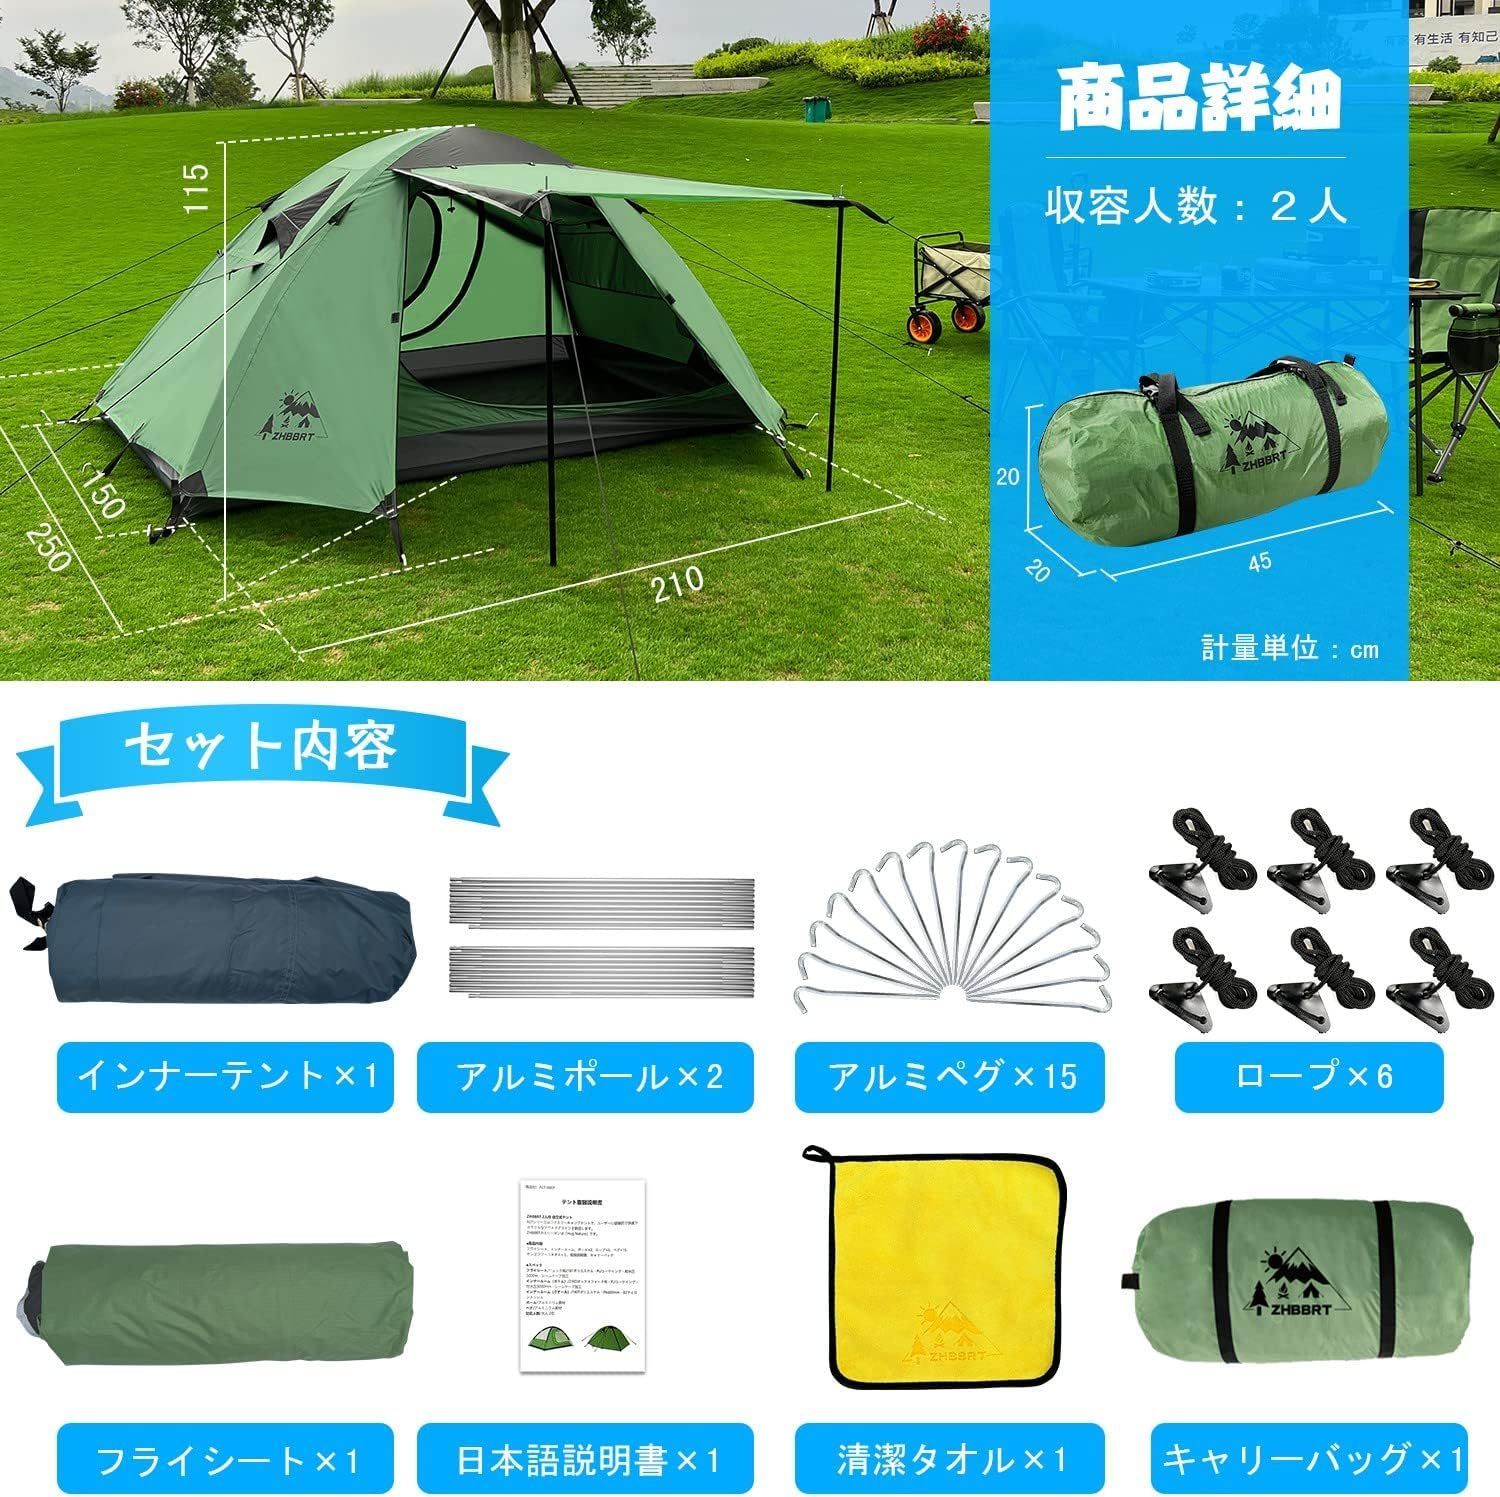 ZHBBRT テント 2人用 ドームテント ツーリングドーム キャンプテント